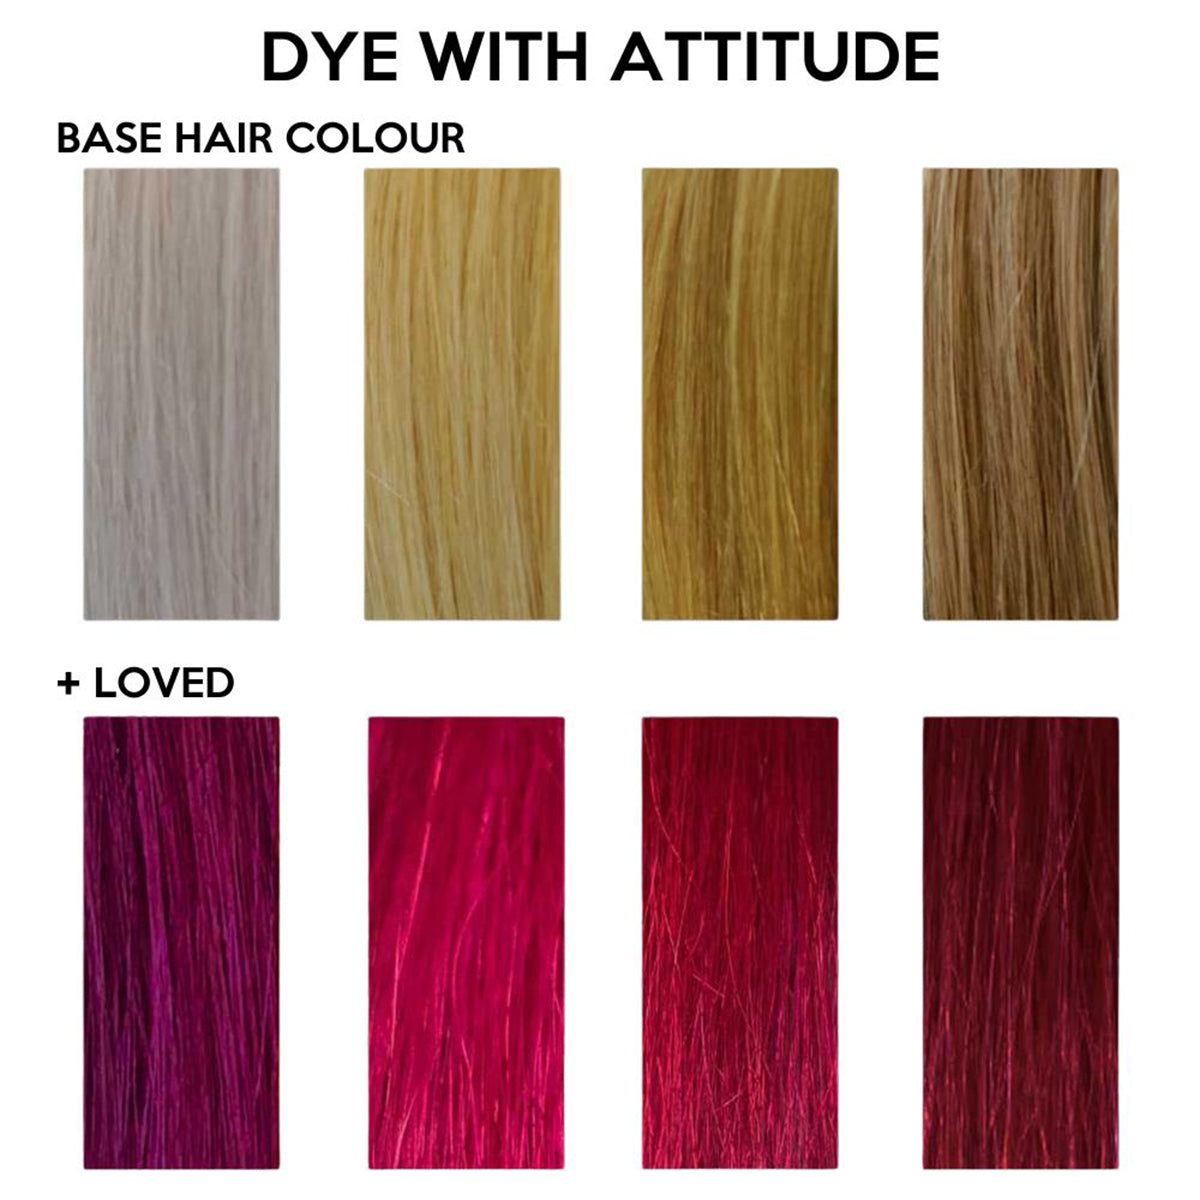 LOVED PINK - Farba do włosów Attitude - 135ml